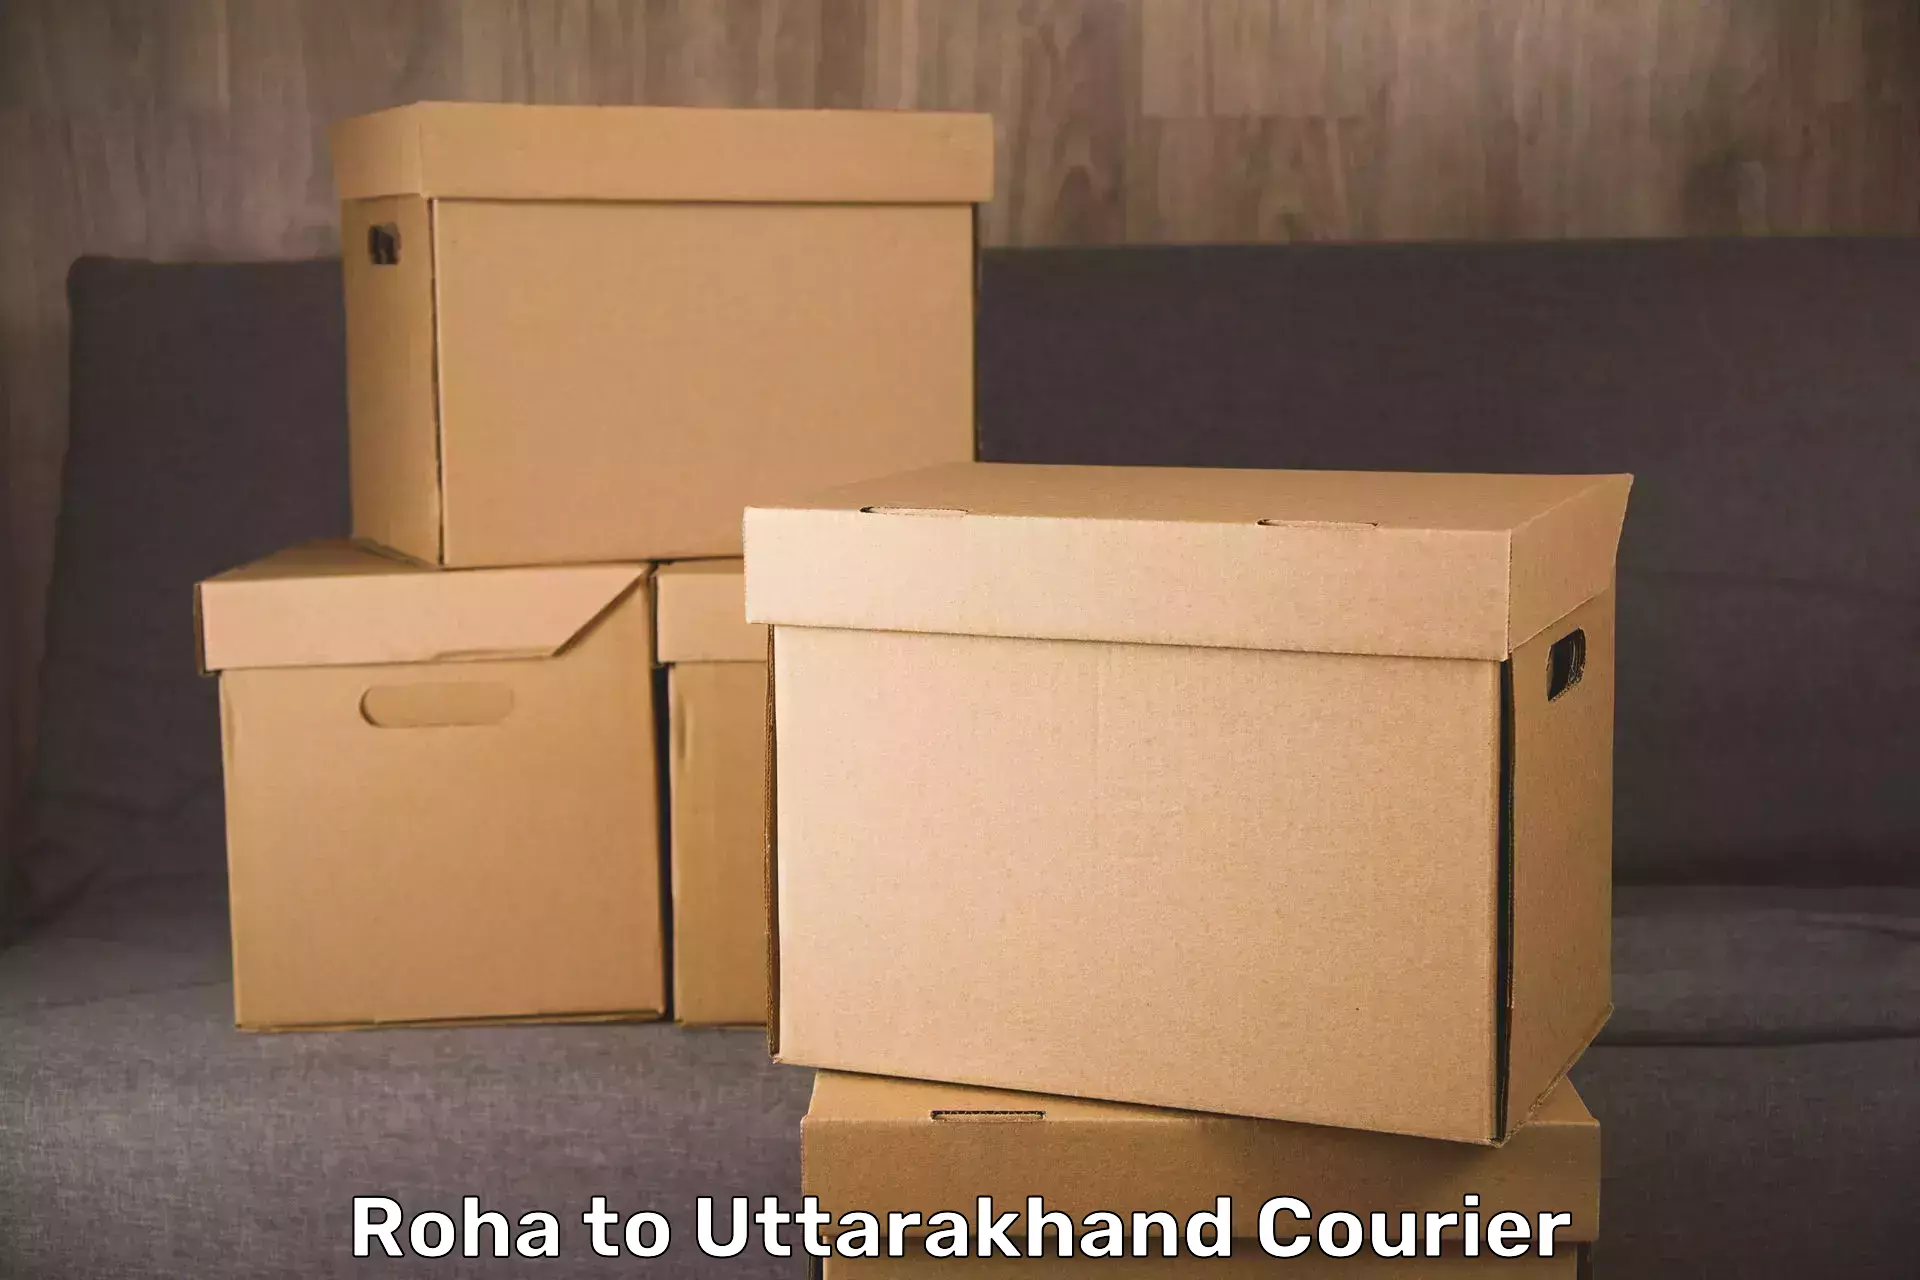 Luggage transport solutions Roha to Uttarakhand